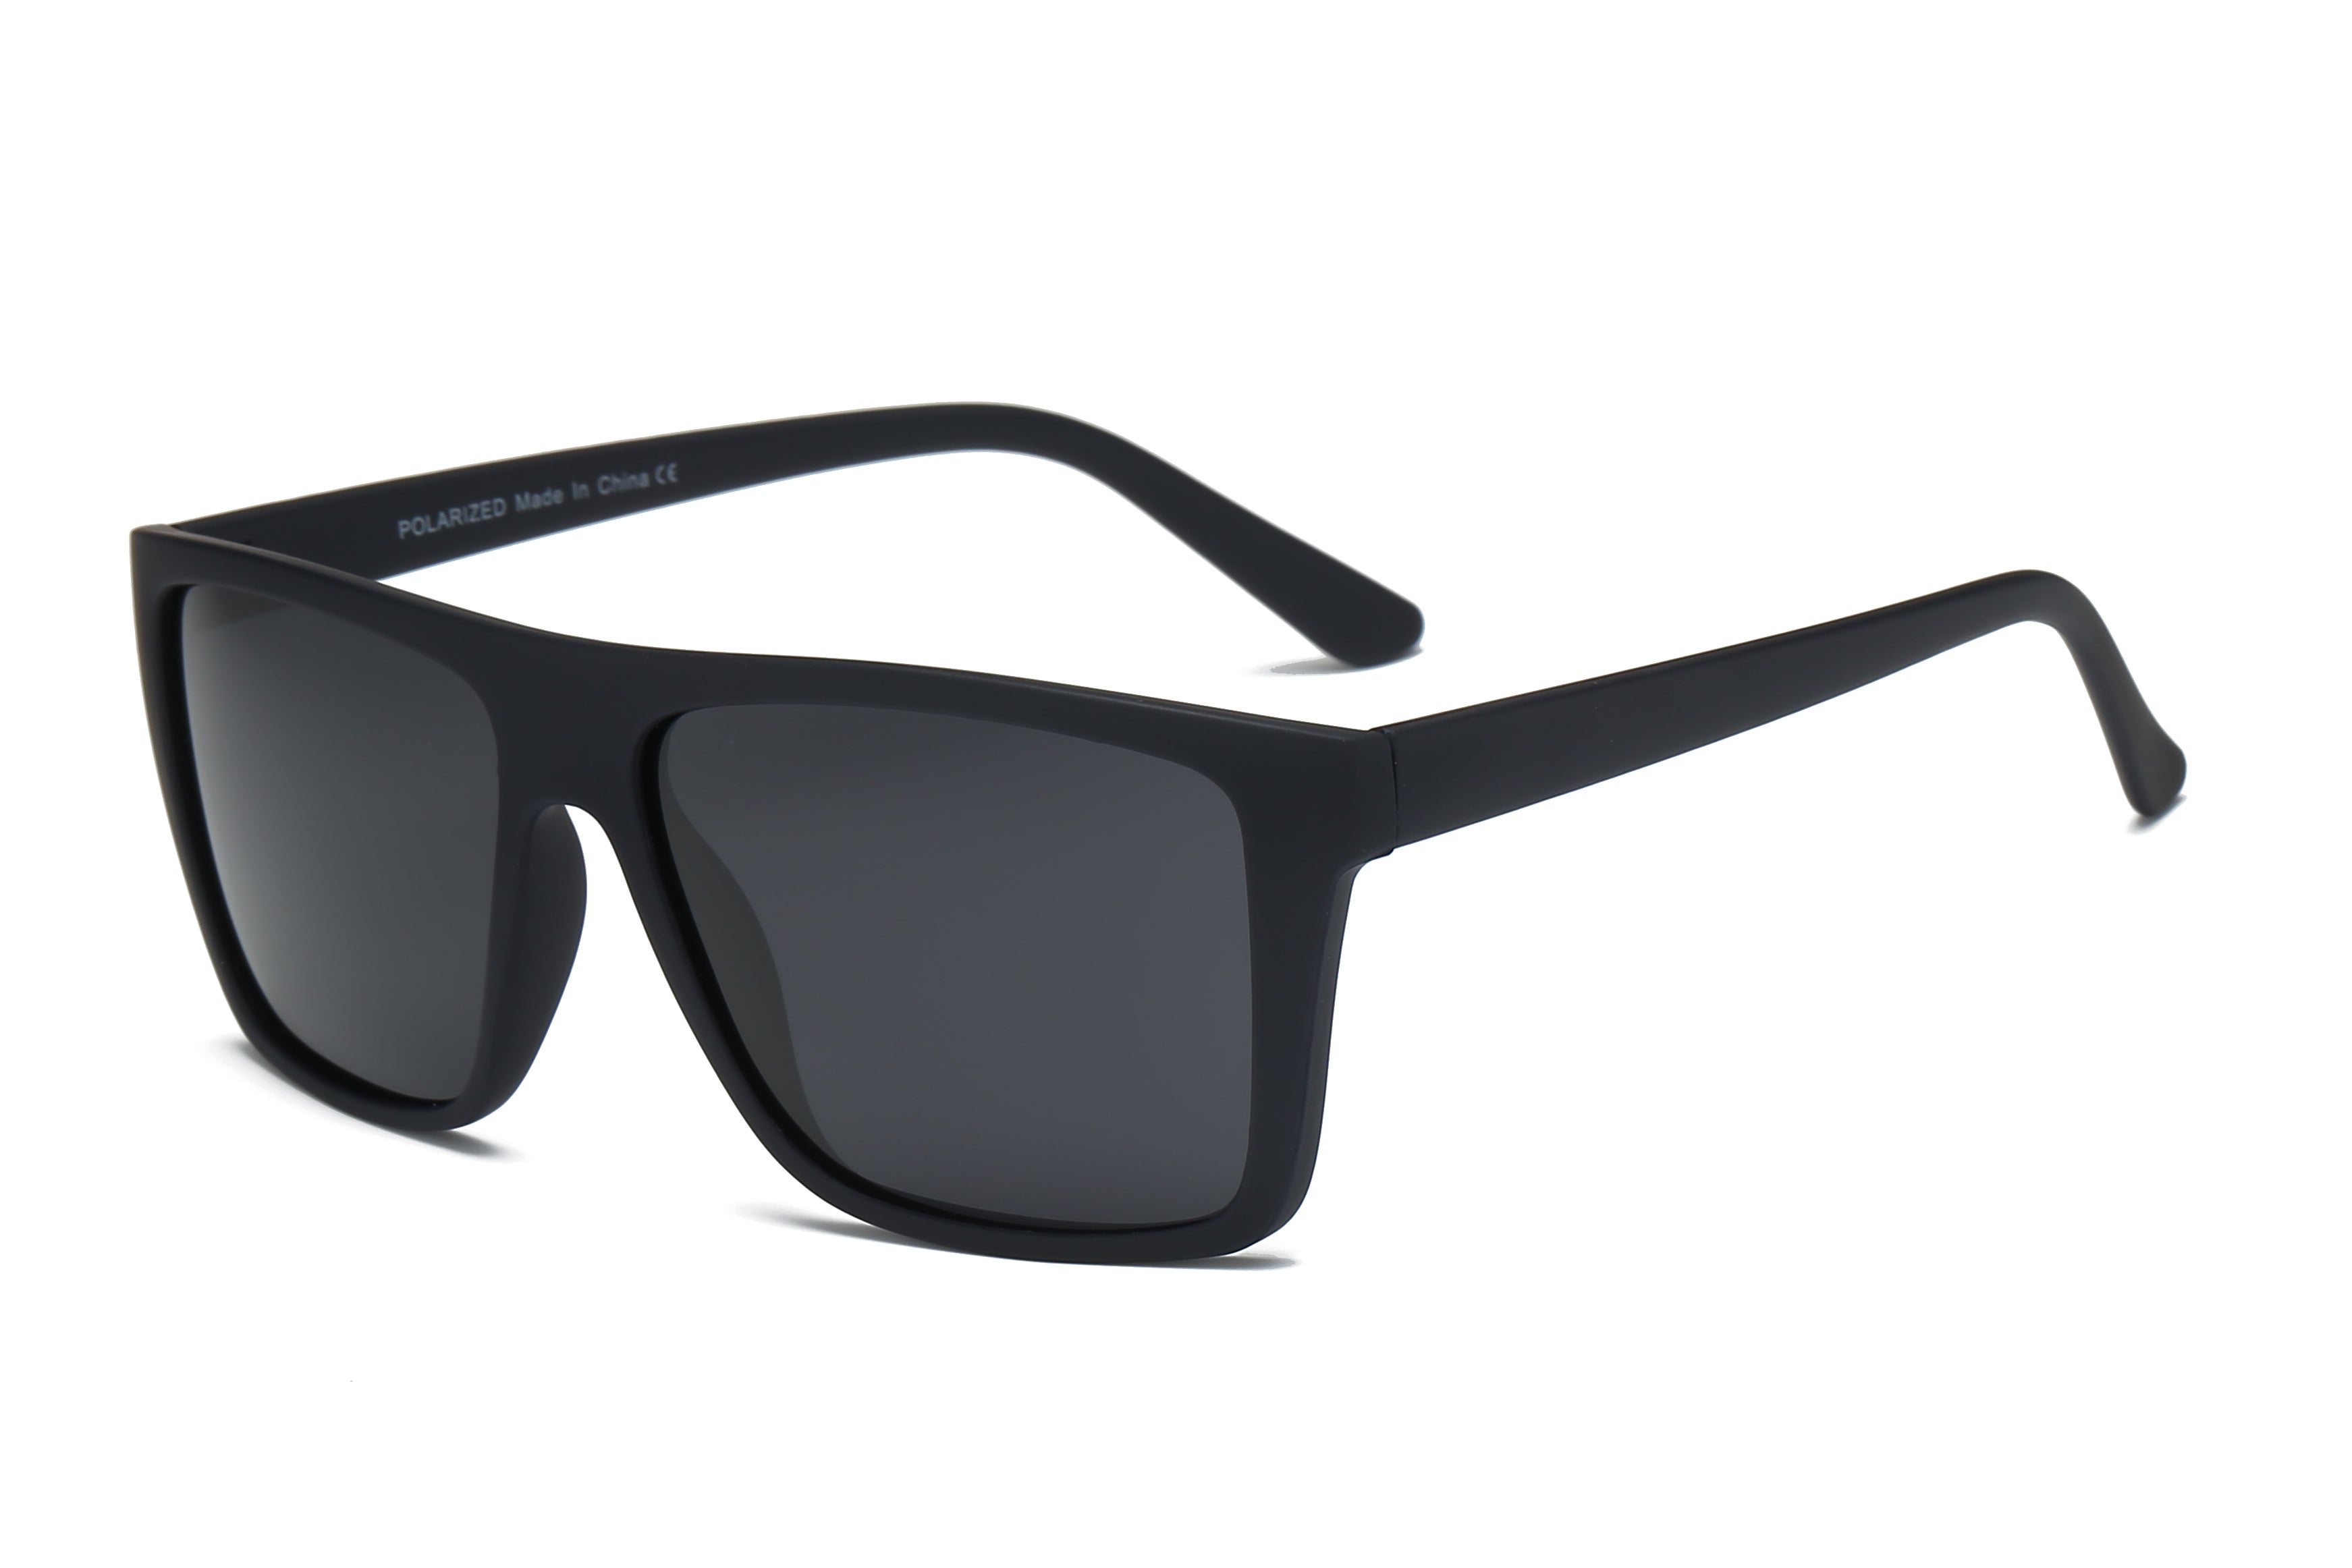 Sunglasses: Rectangle Sunglasses, acetate & tweed — Fashion